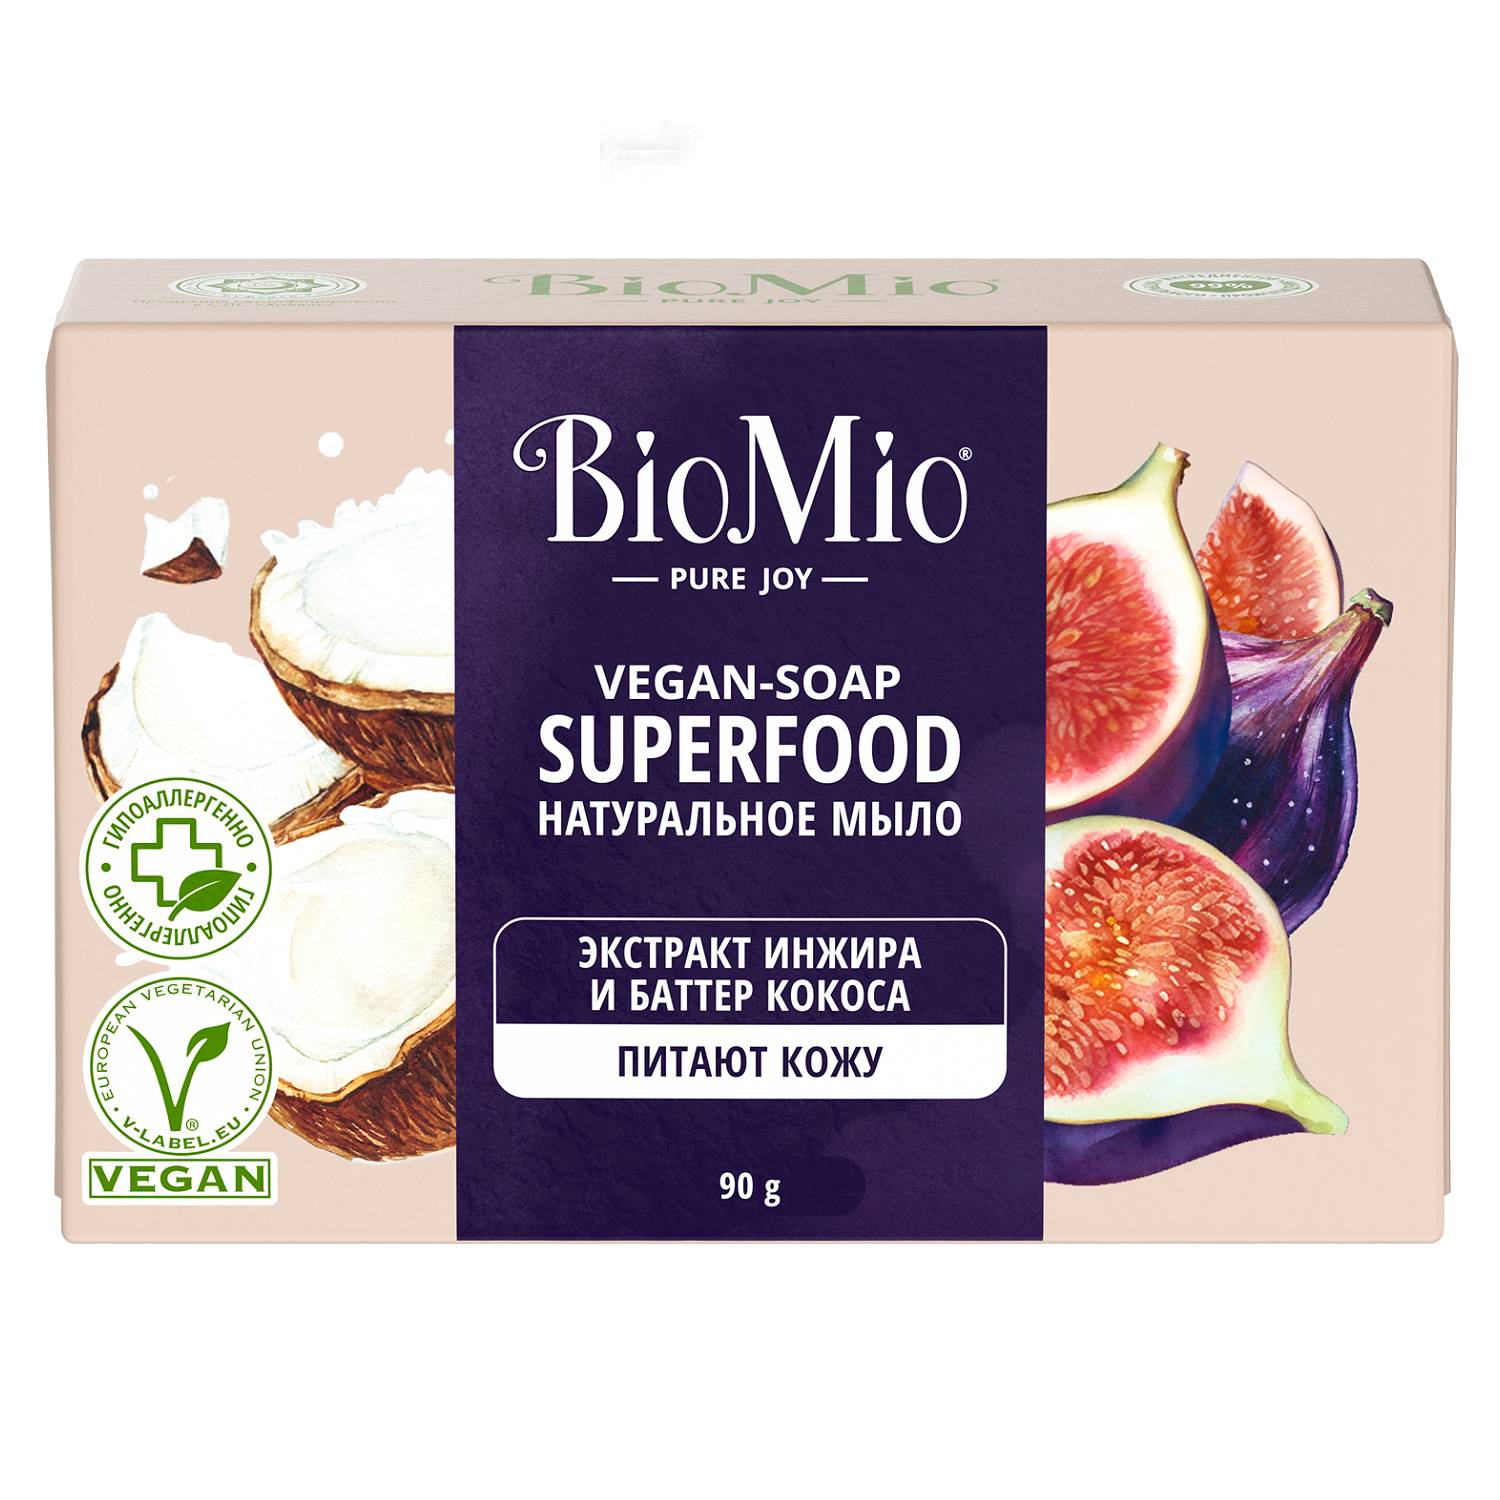 BioMio Натуральное мыло Инжир и кокос Vegan Soap Superfood, 90 г (BioMio, Мыло) мыло biomio инжир и кокос 90 г